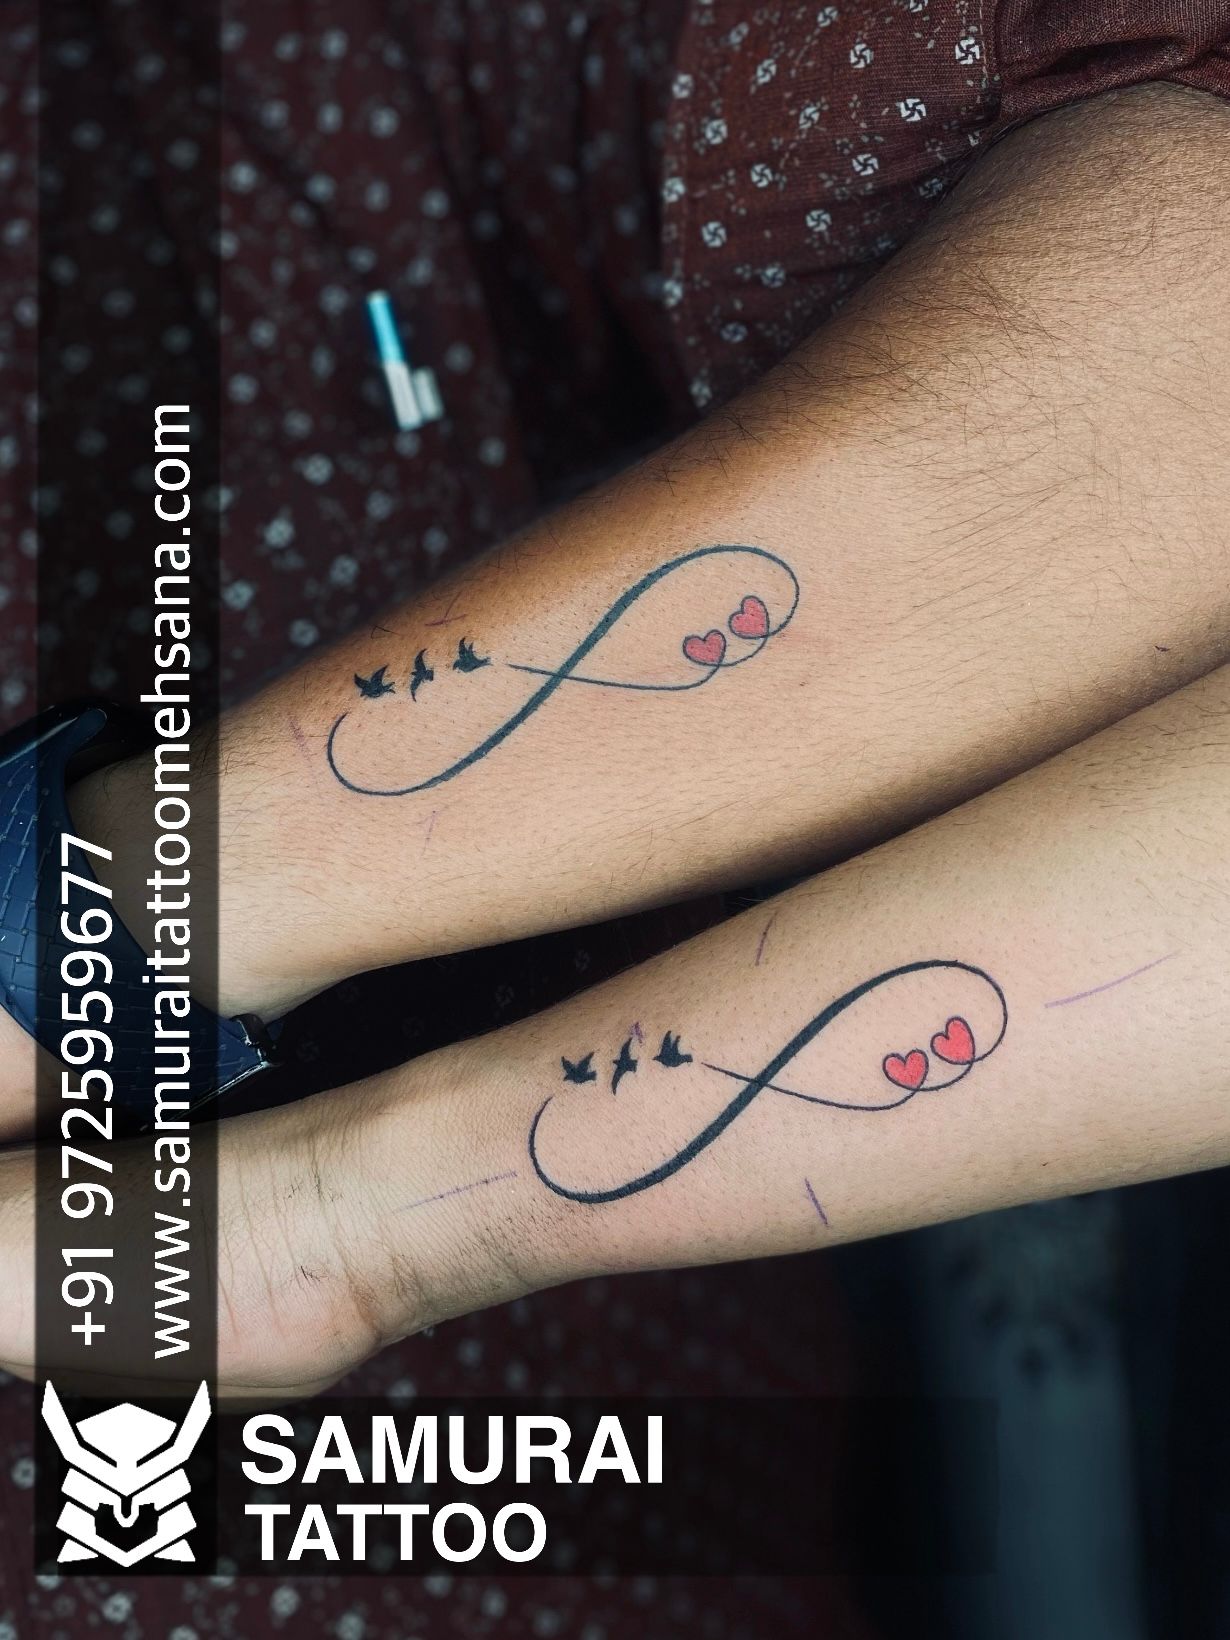 tattoo #kumartattoostudio done by... - Kumar tattoo studio | Facebook